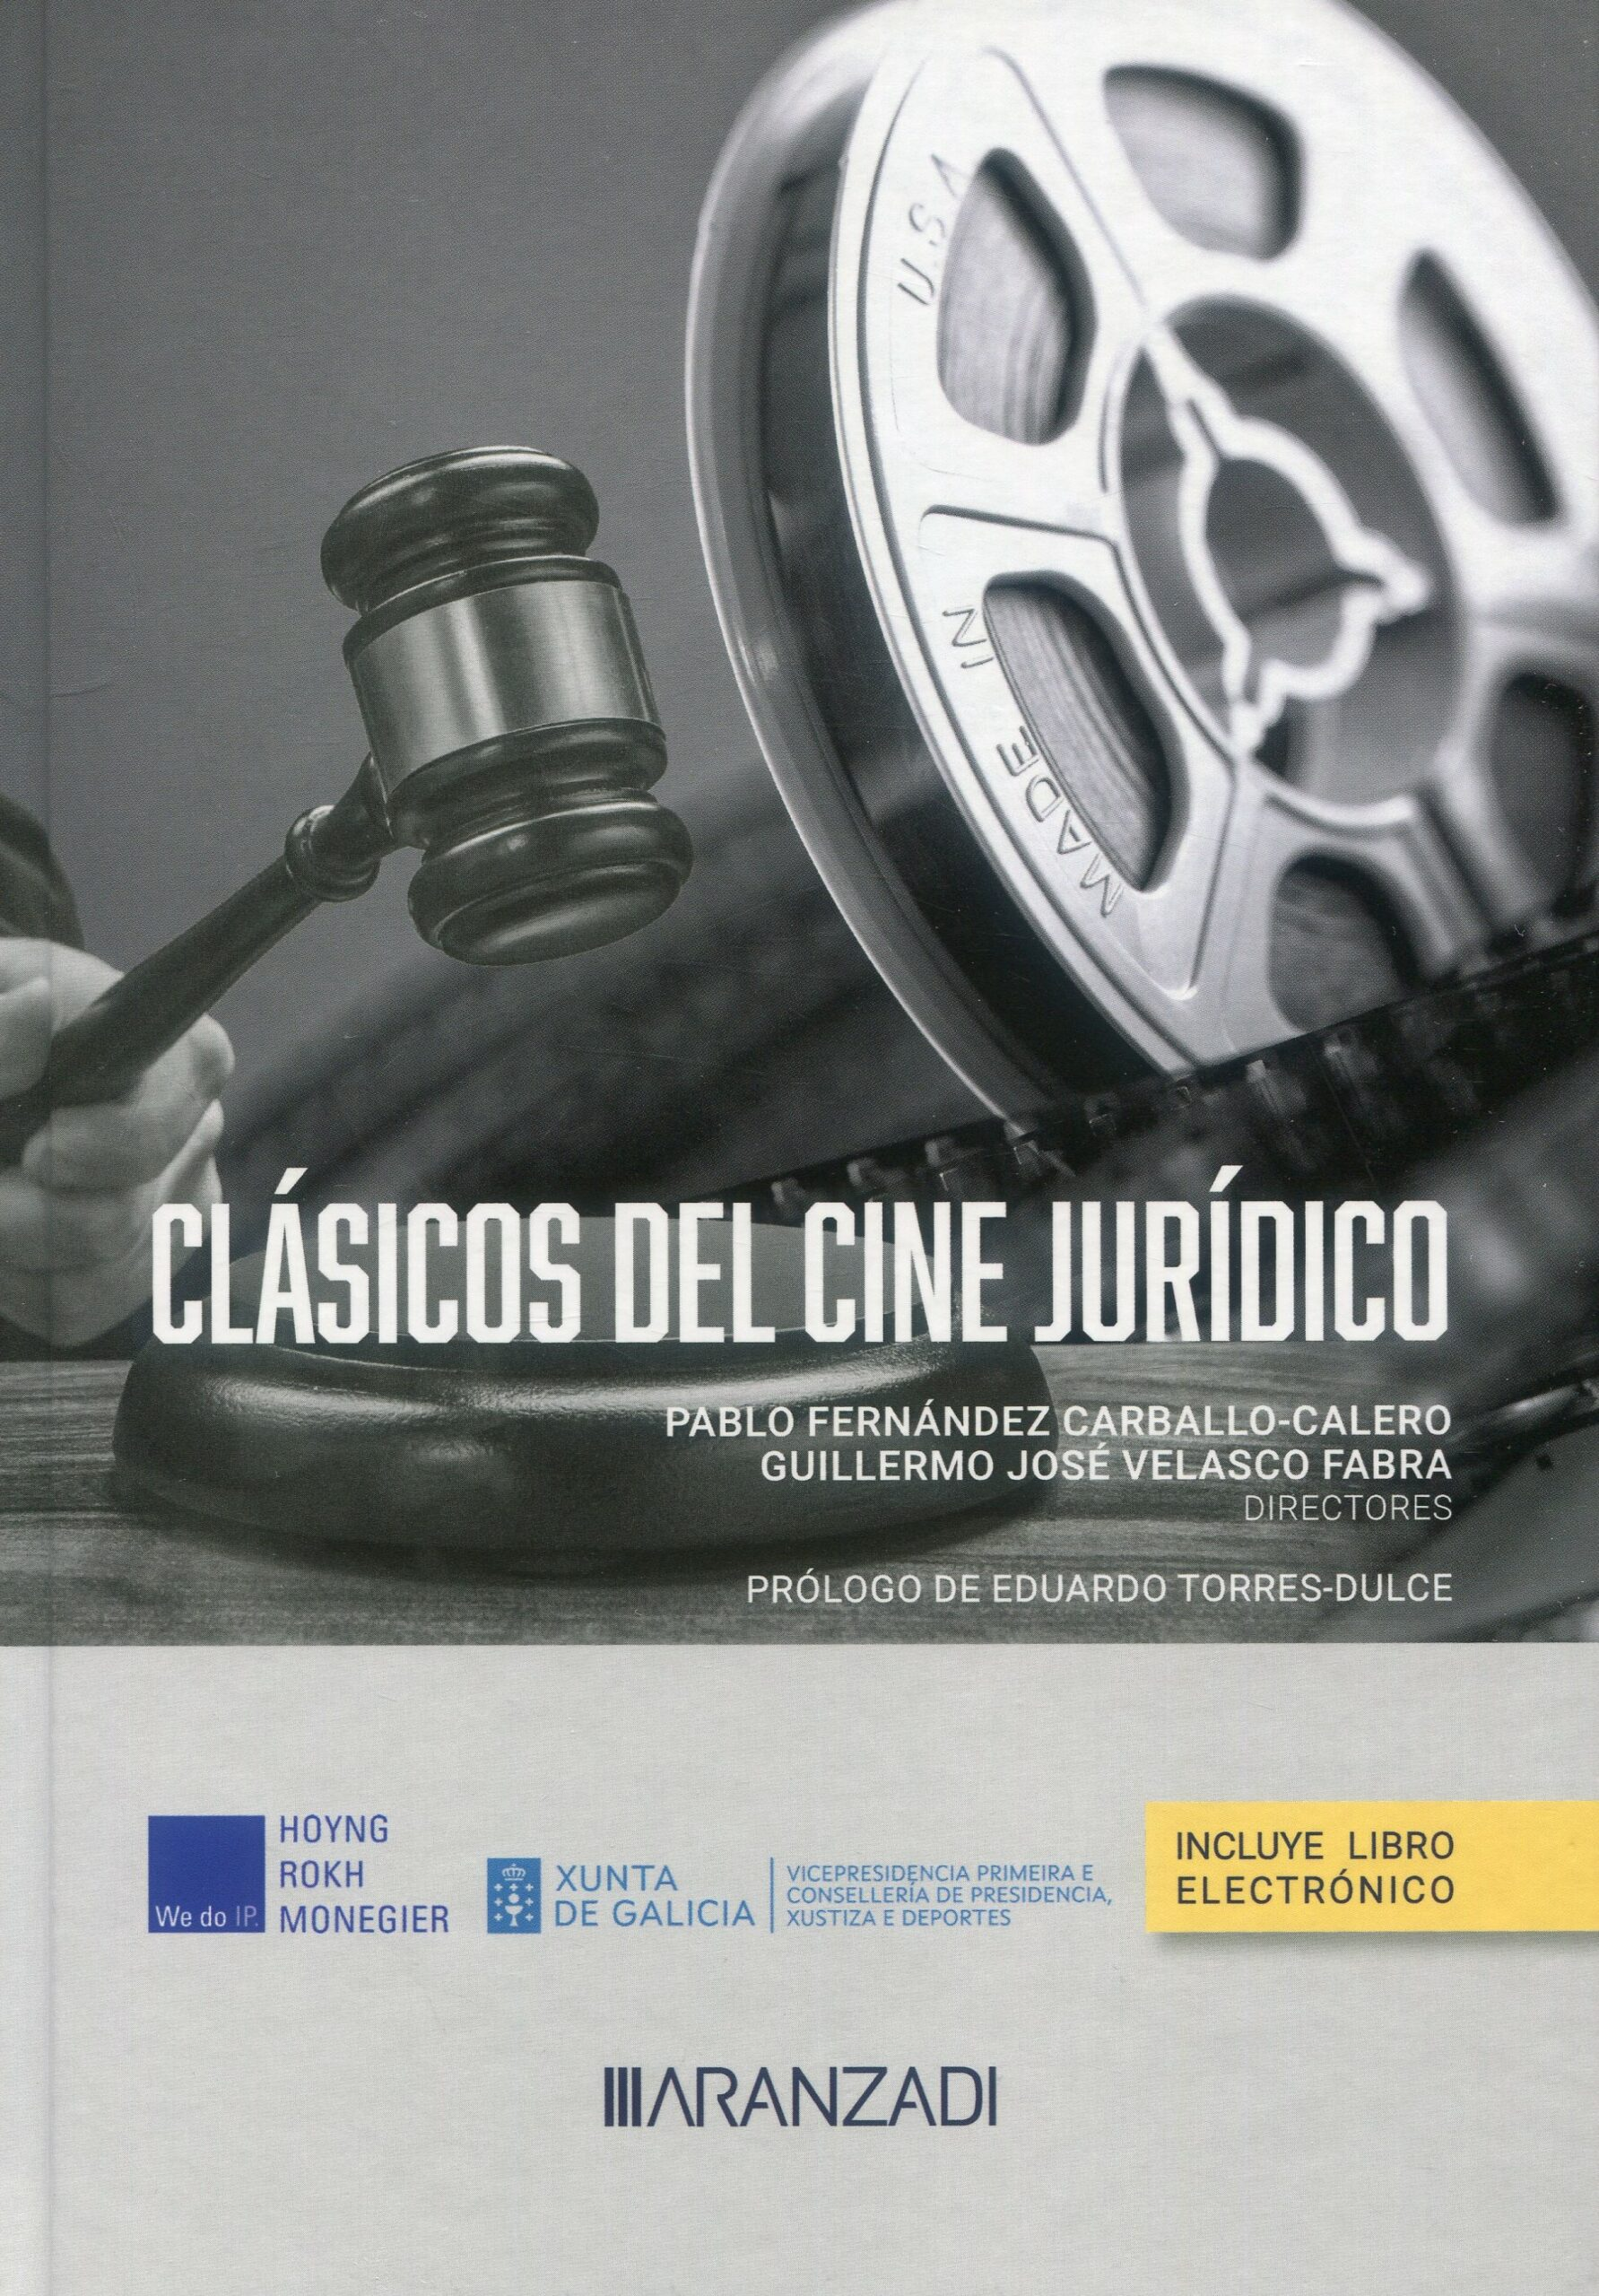 Próxima presentación: Clásicos del cine jurídico